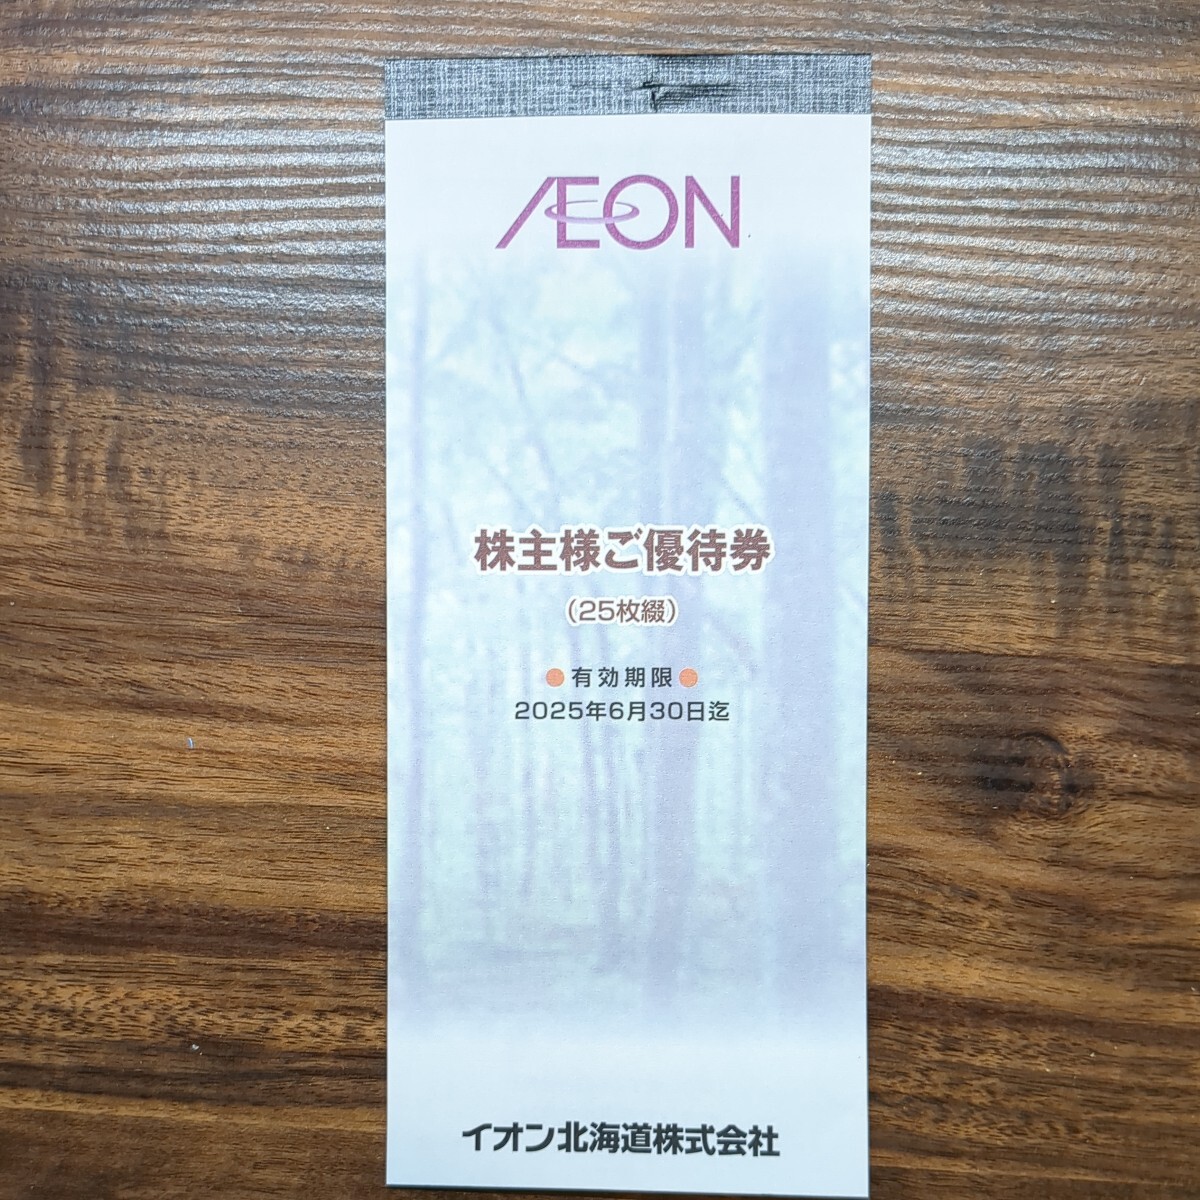 [ бесплатная доставка ] ион Hokkaido акционерное общество AEON акционер пригласительный билет 2,500 иен минут . покупка предмет льготный билет новейший версия временные ограничения 2025 год 6 месяц 30 день [1 иен старт ]